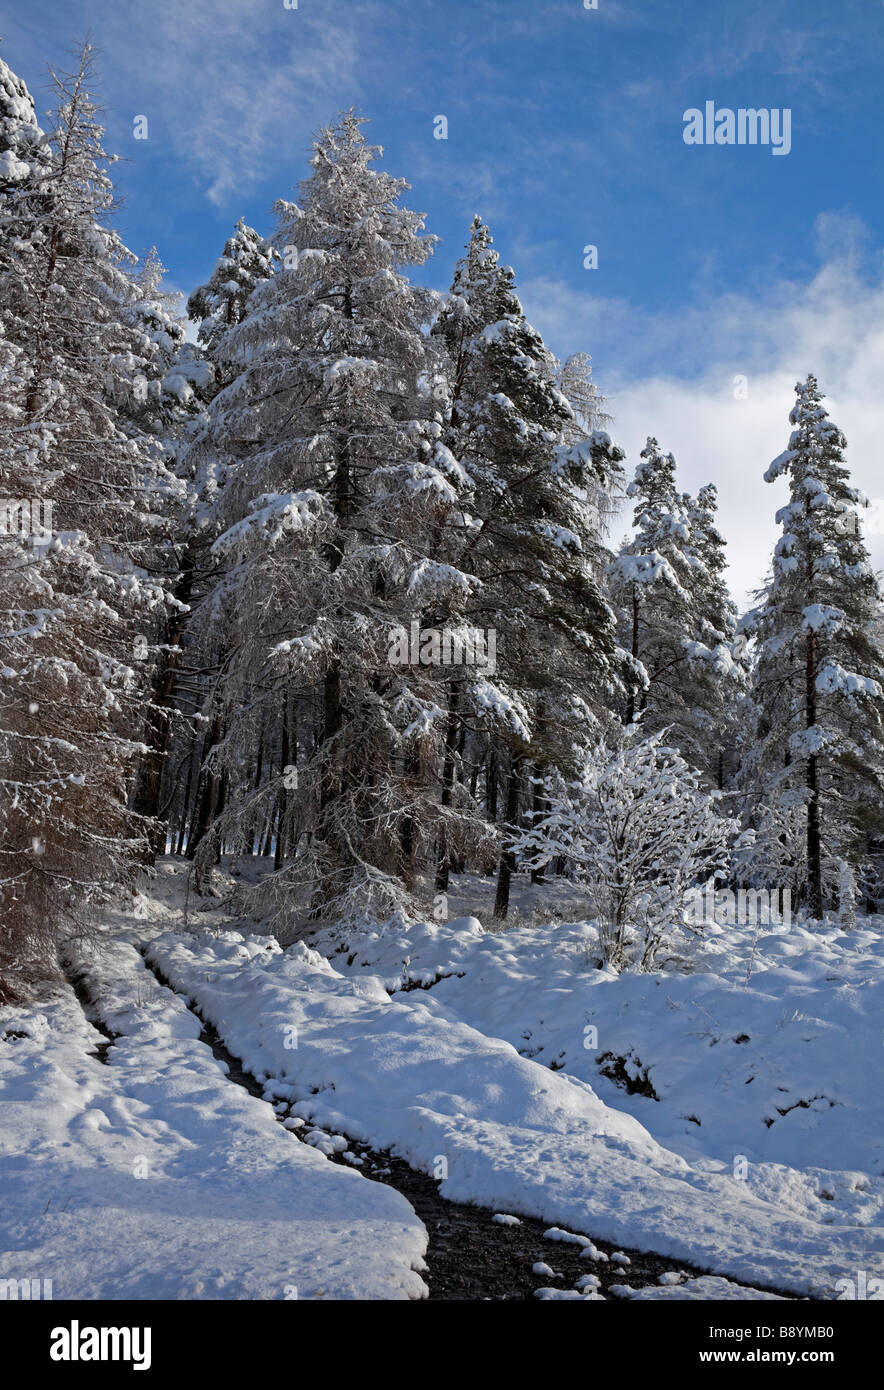 Coperte di neve alberi di conifere con un ruscello in esecuzione in discesa, Breadalbane, Highlands scozzesi, Scotland, Regno Unito, Europa Foto Stock